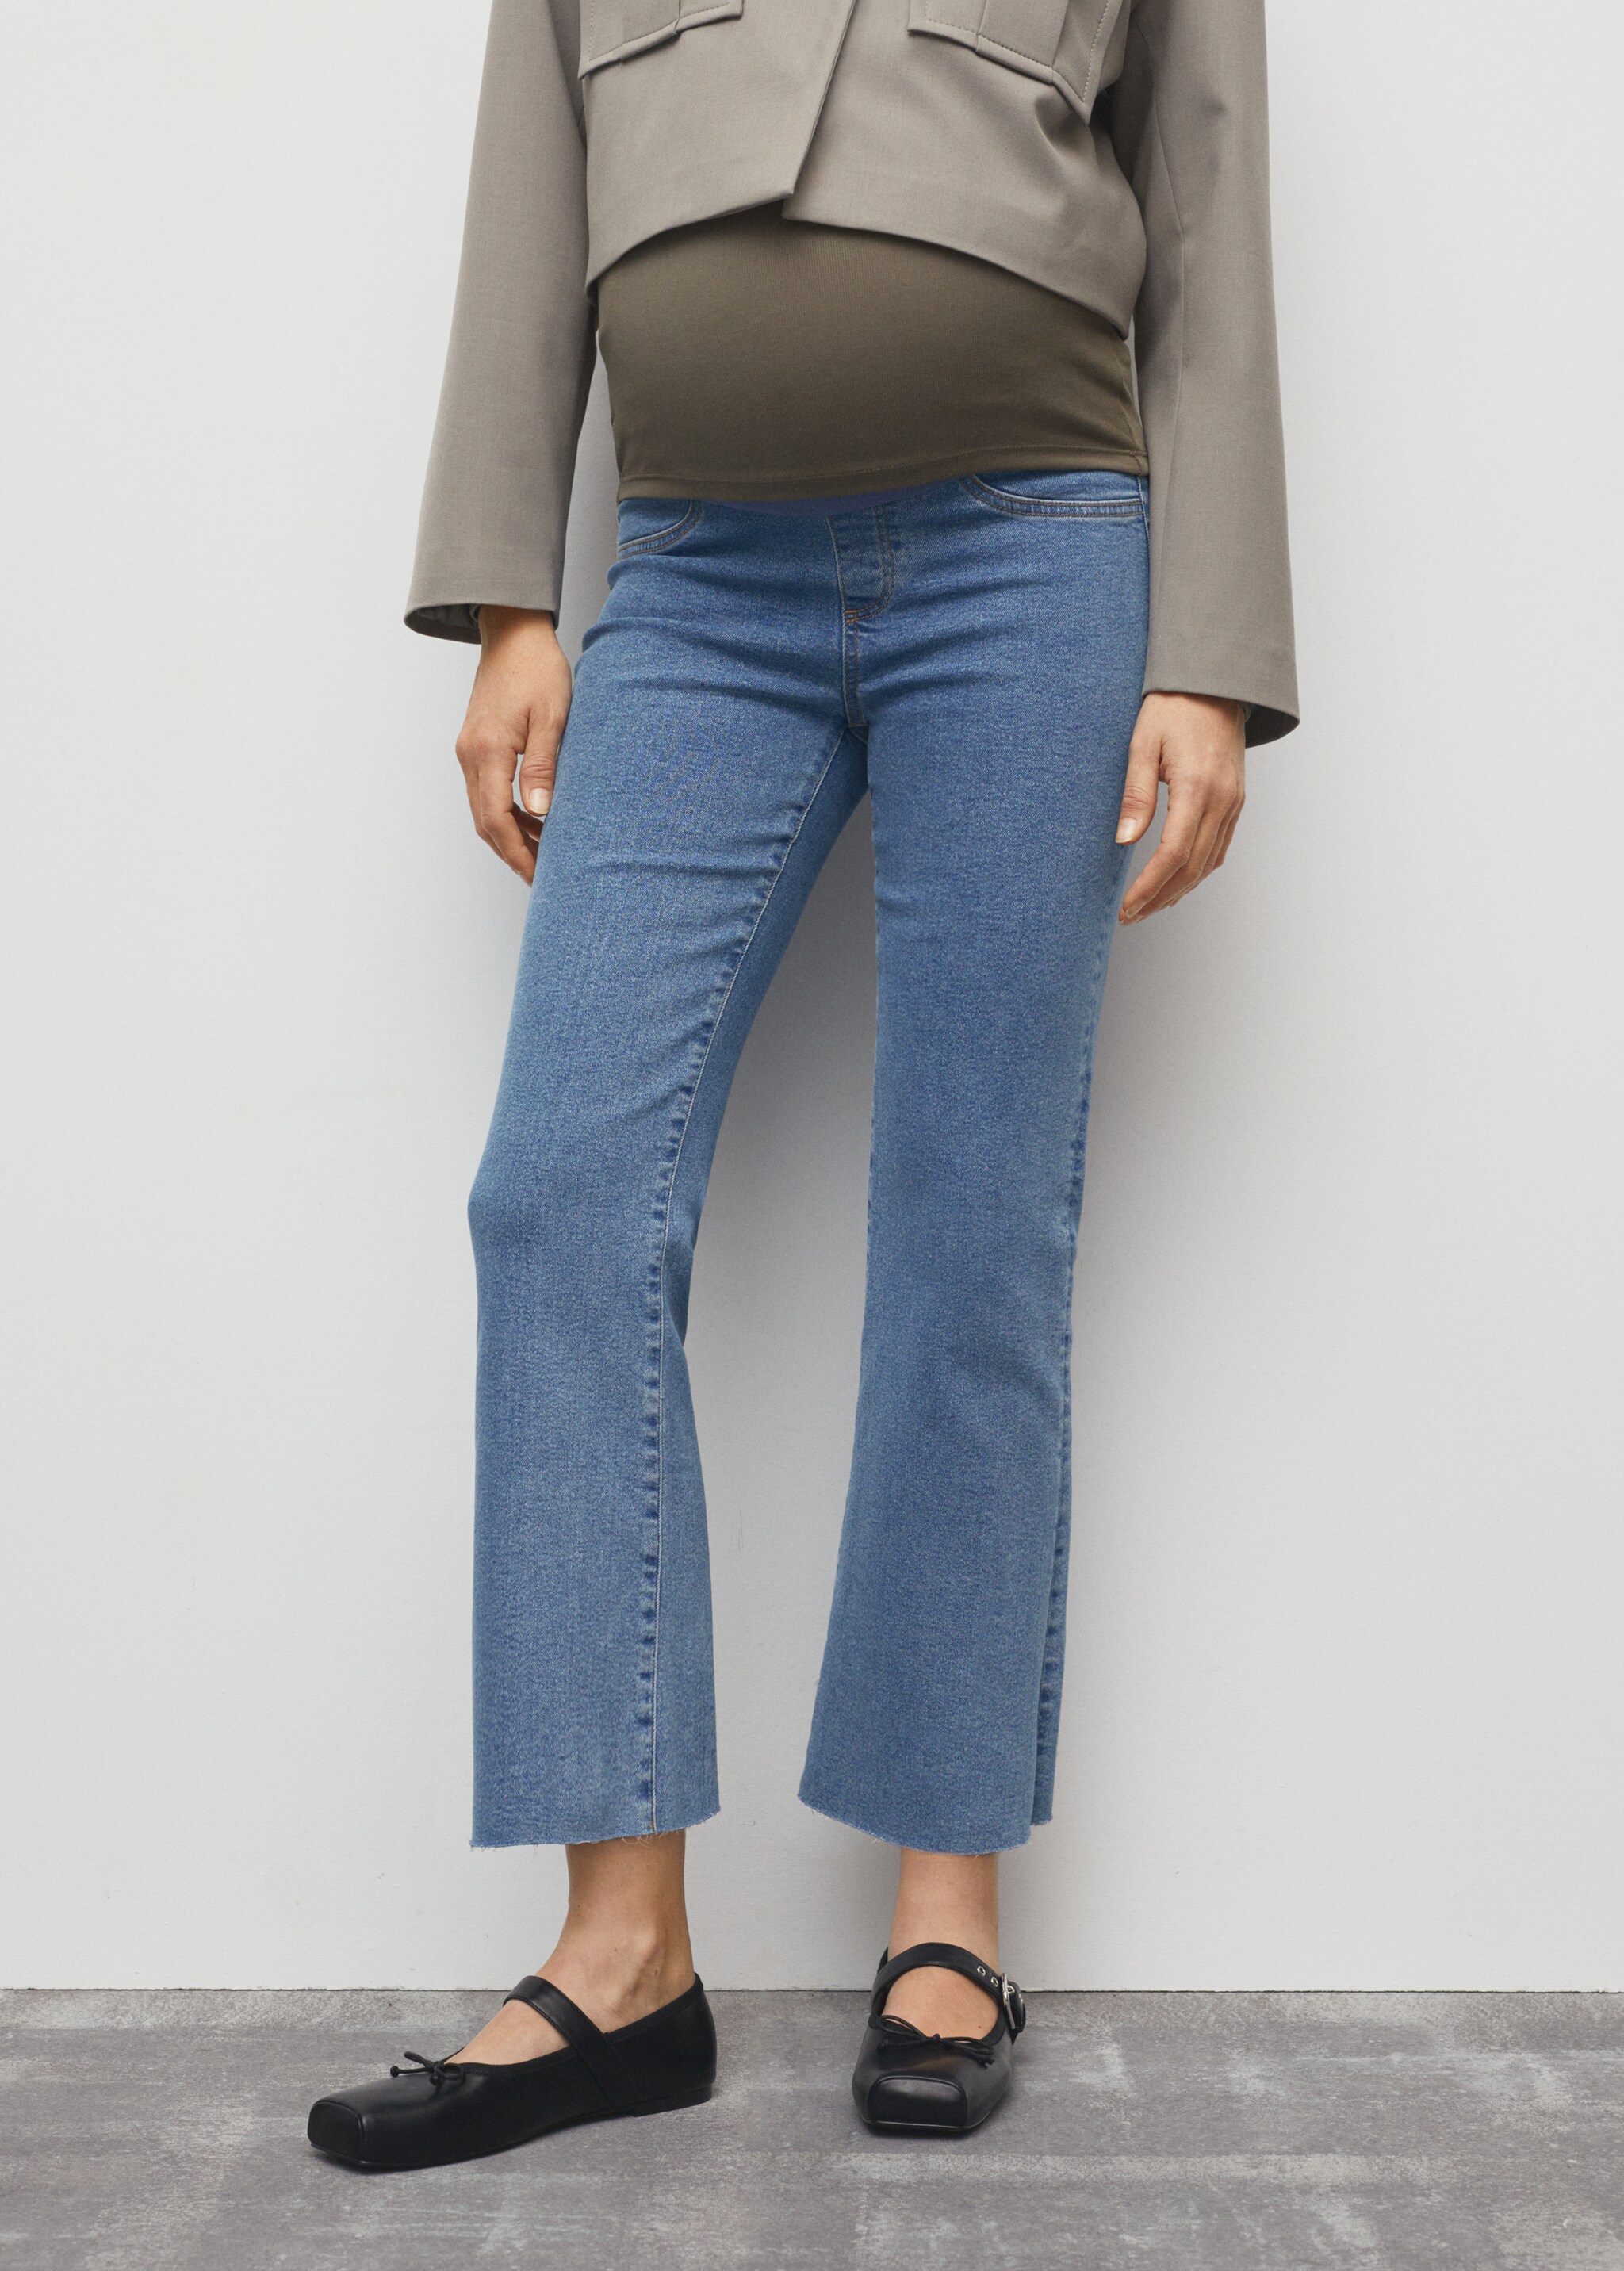 Укороченные джинсы flare для будущей мамы - Средний план